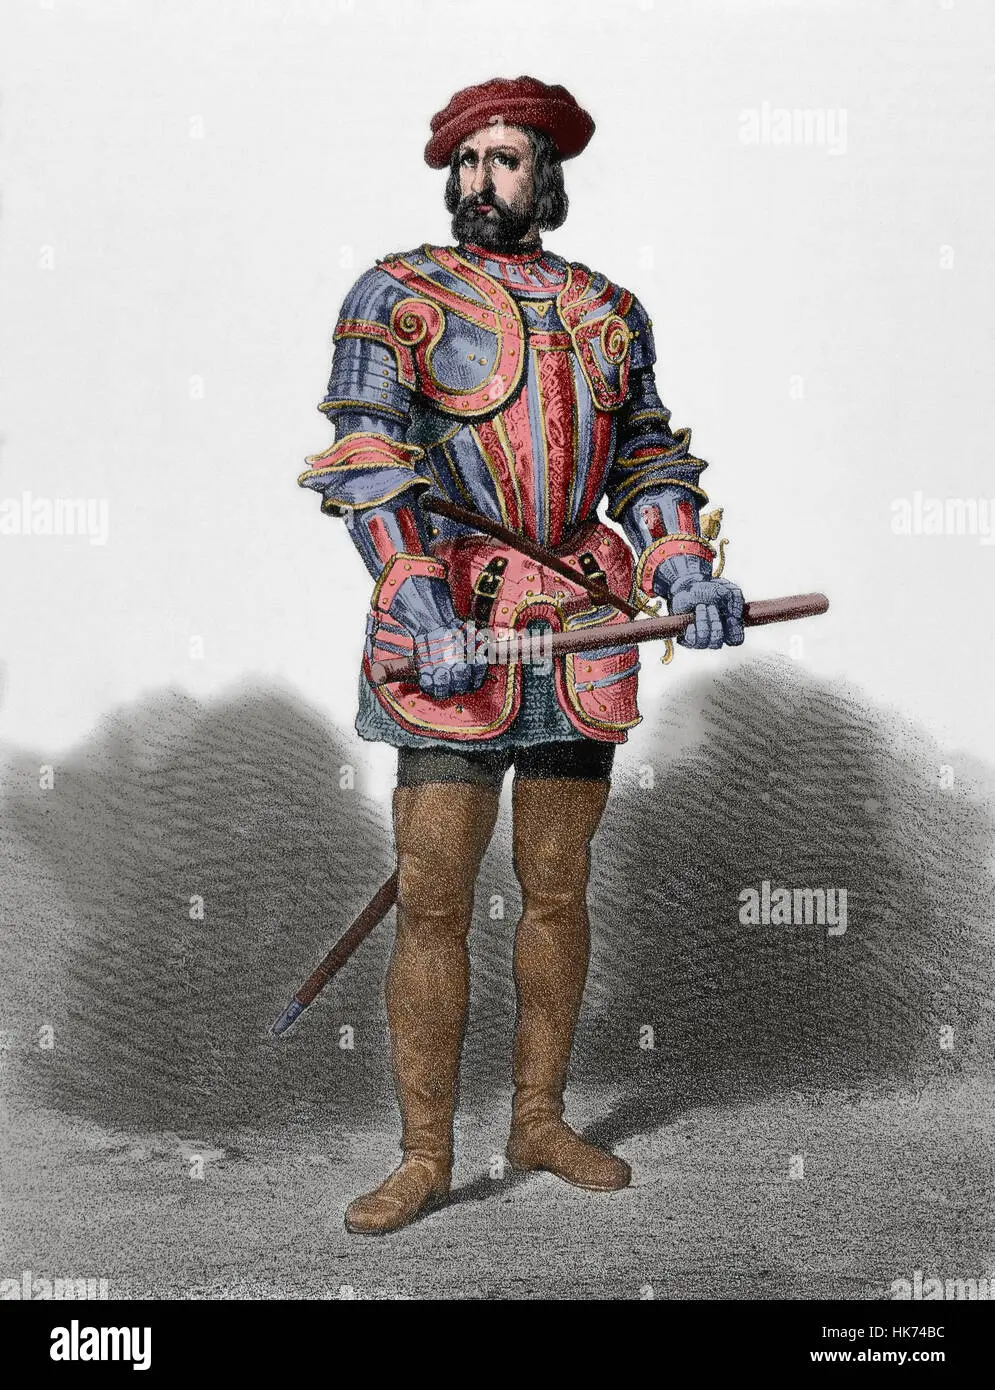 hernan cortes vestimenta - Qué características tiene Hernán Cortés